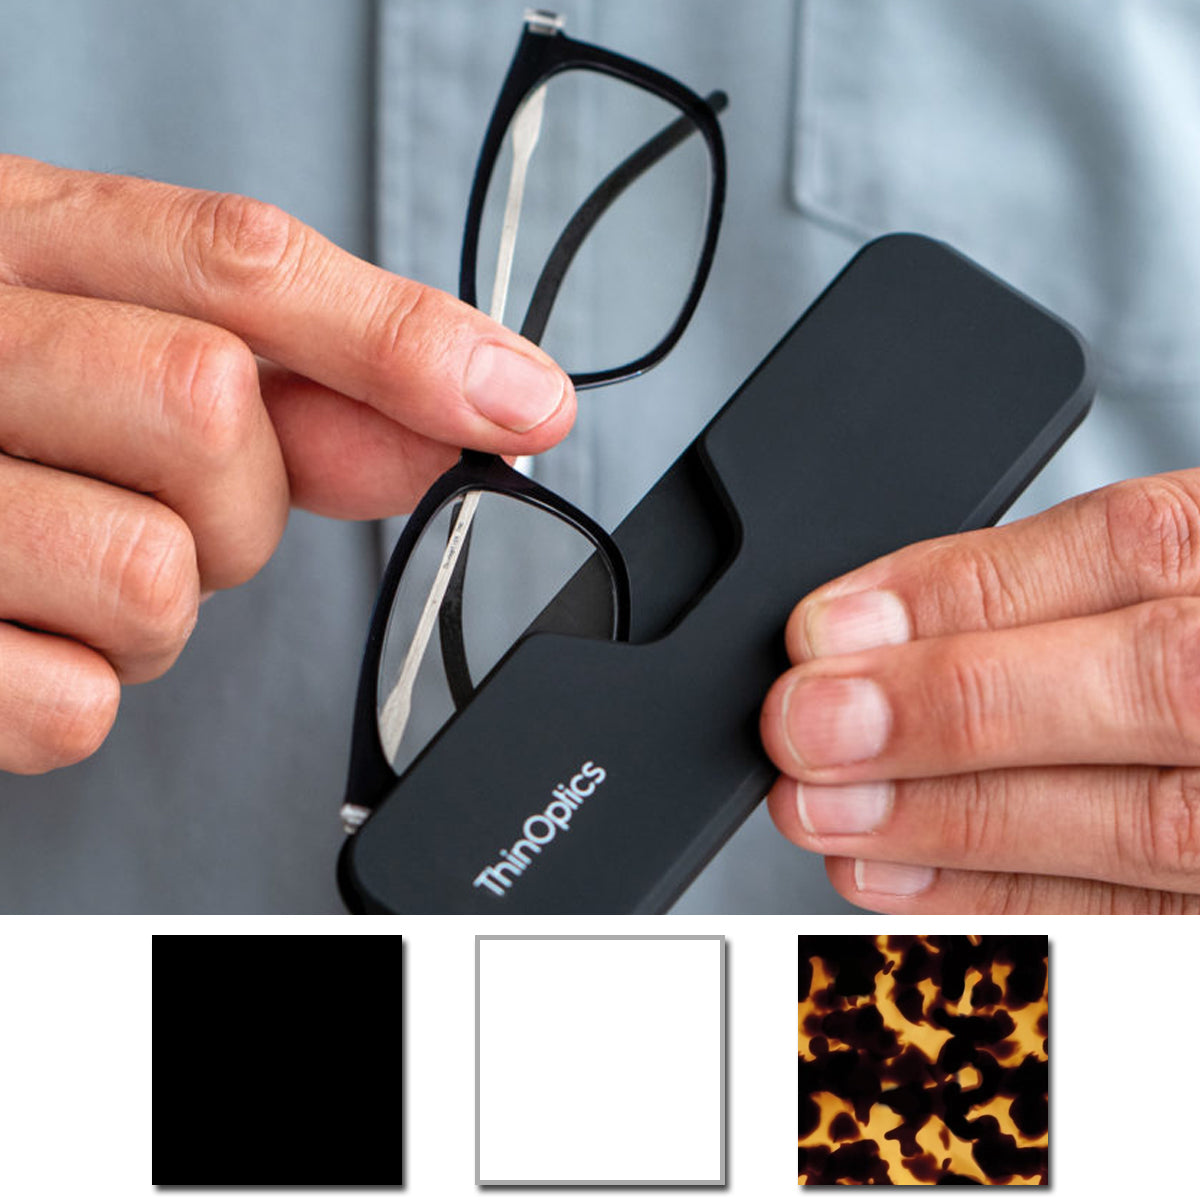 ThinOptics Connect Reading Glasses with Black Full Frame Pod ThinOptics